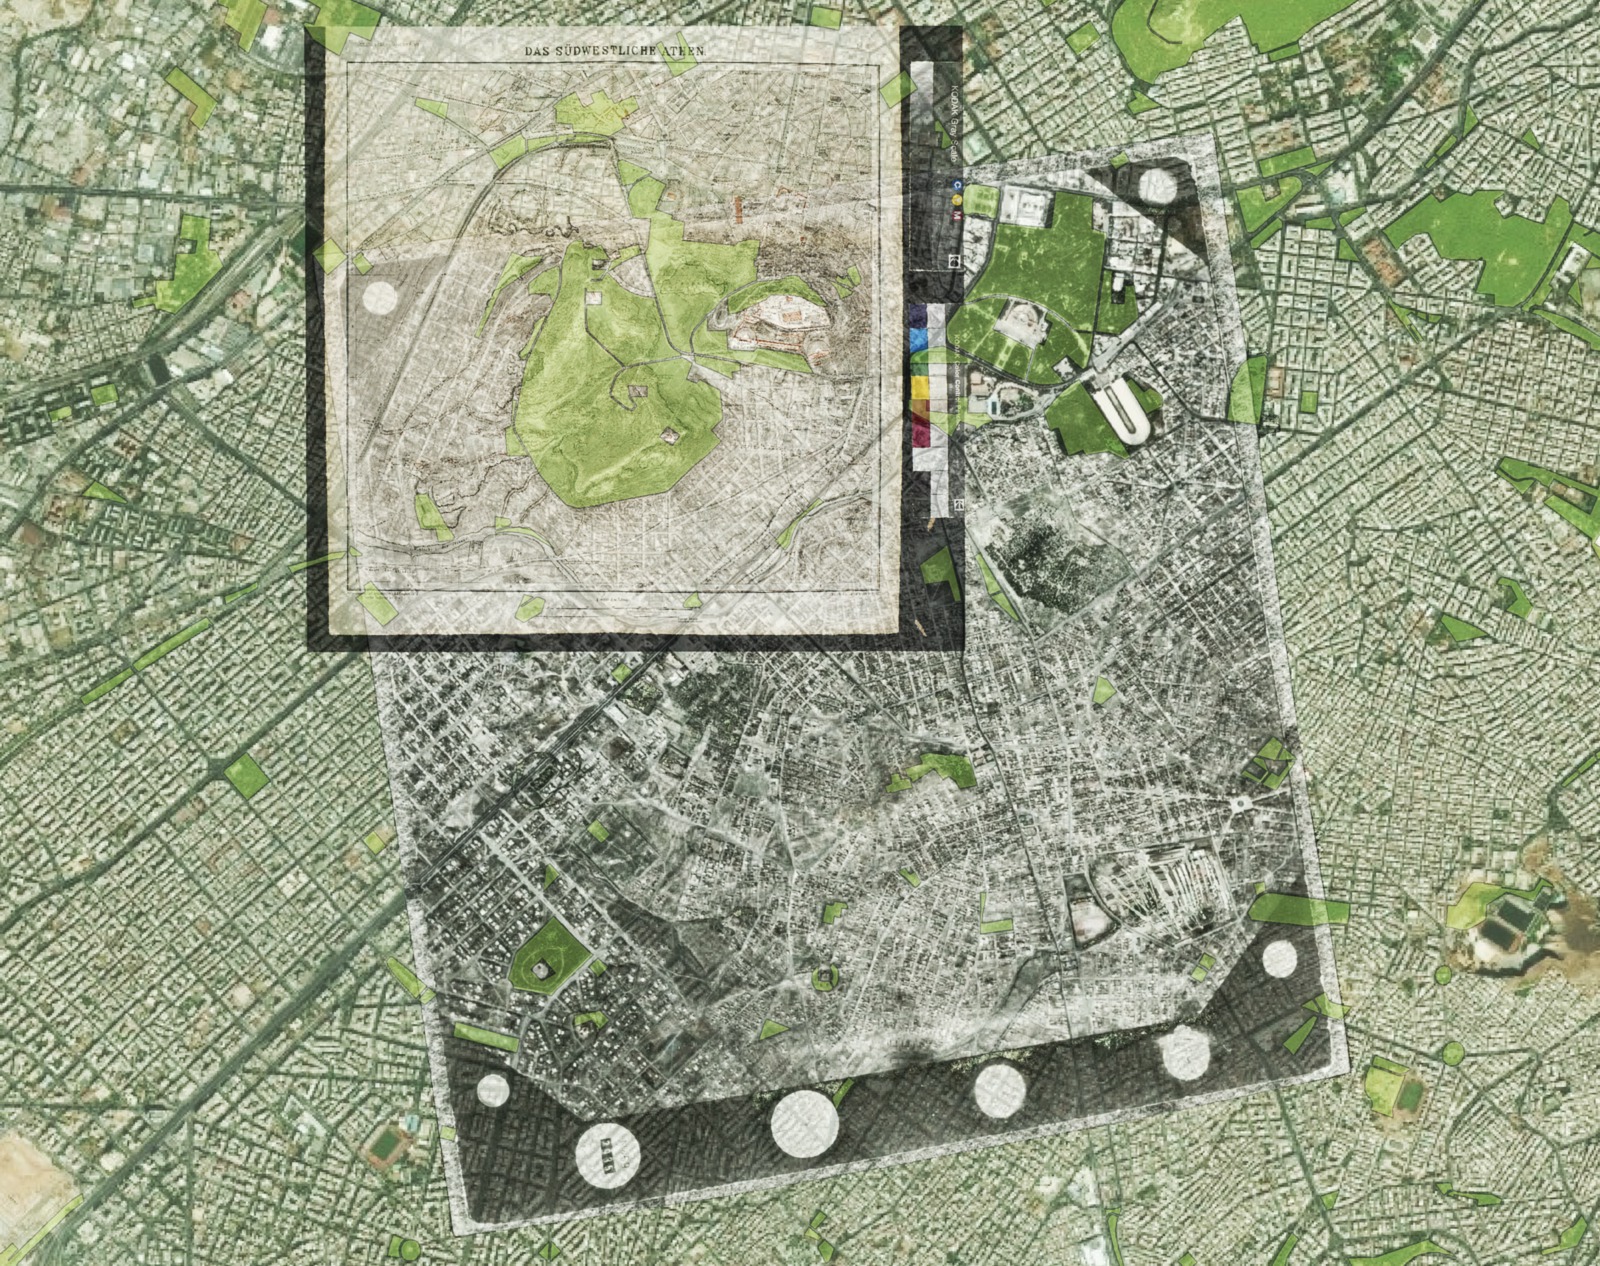 Γεωαναφορά αεροφωτογραφίας της Αθήνας του 1939 (κλίμακα 1:18000) από τη Γεωγραφική Υπηρεσία Στρατού και του χάρτη των Curtius, E. & Kaupert, J. A. Atlas von Athen. Berlin 1878: ΒΙ.ΙΙΙ (κλίμακα 1:4000) επάνω σε σύγχρονο υπόβαθρο.